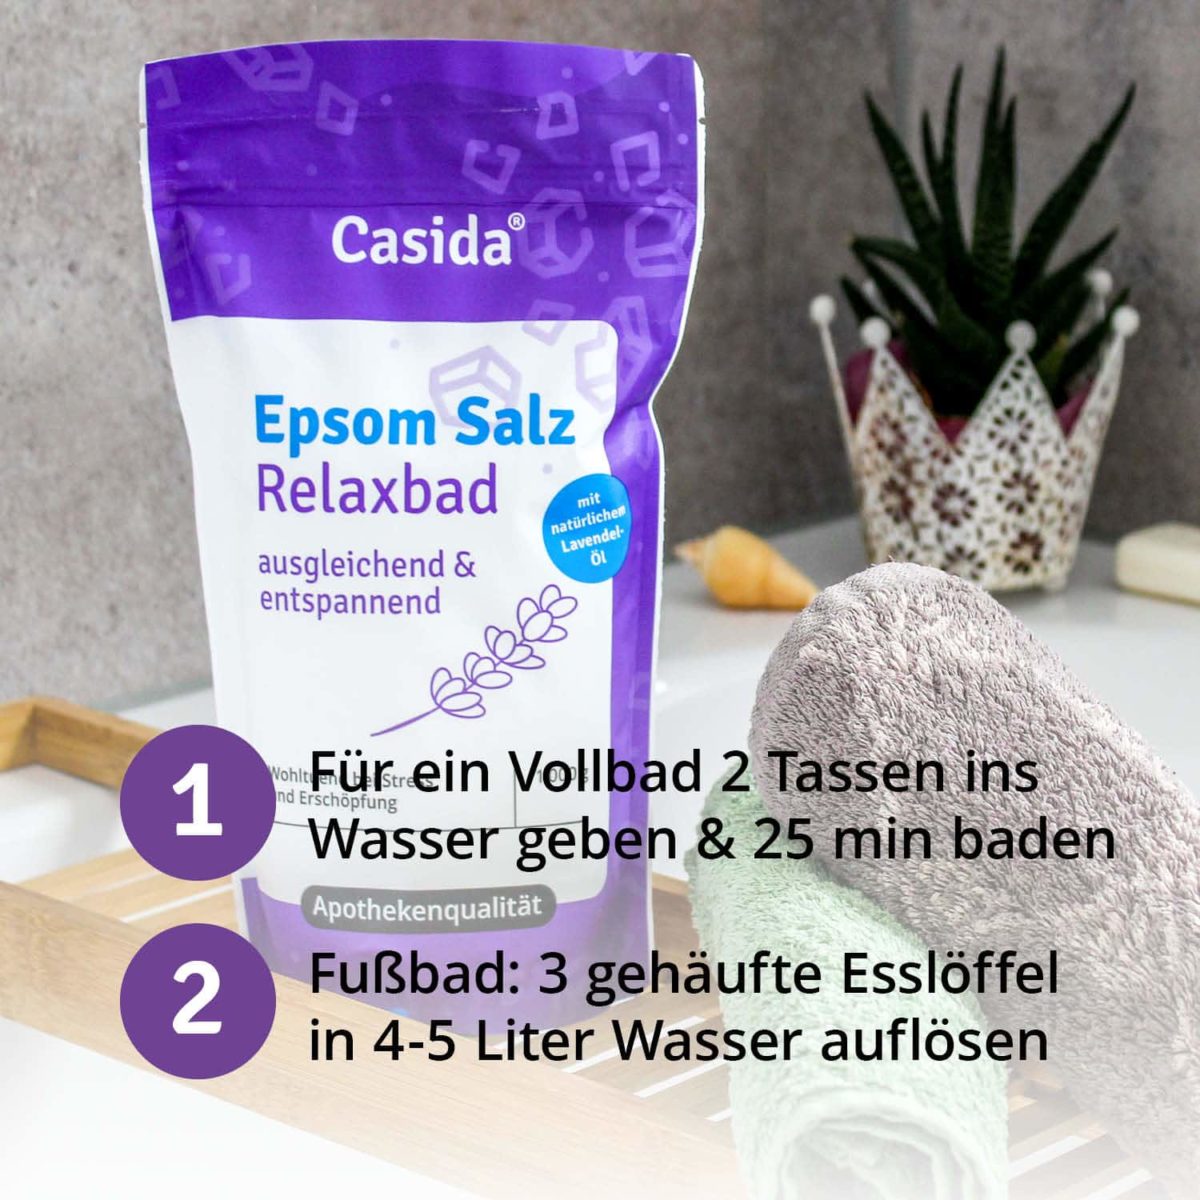 Casida Epsom Salt Relaxing Bath with lavender 1 kg 12903730 PZN pharmacy relaxation bitter salt